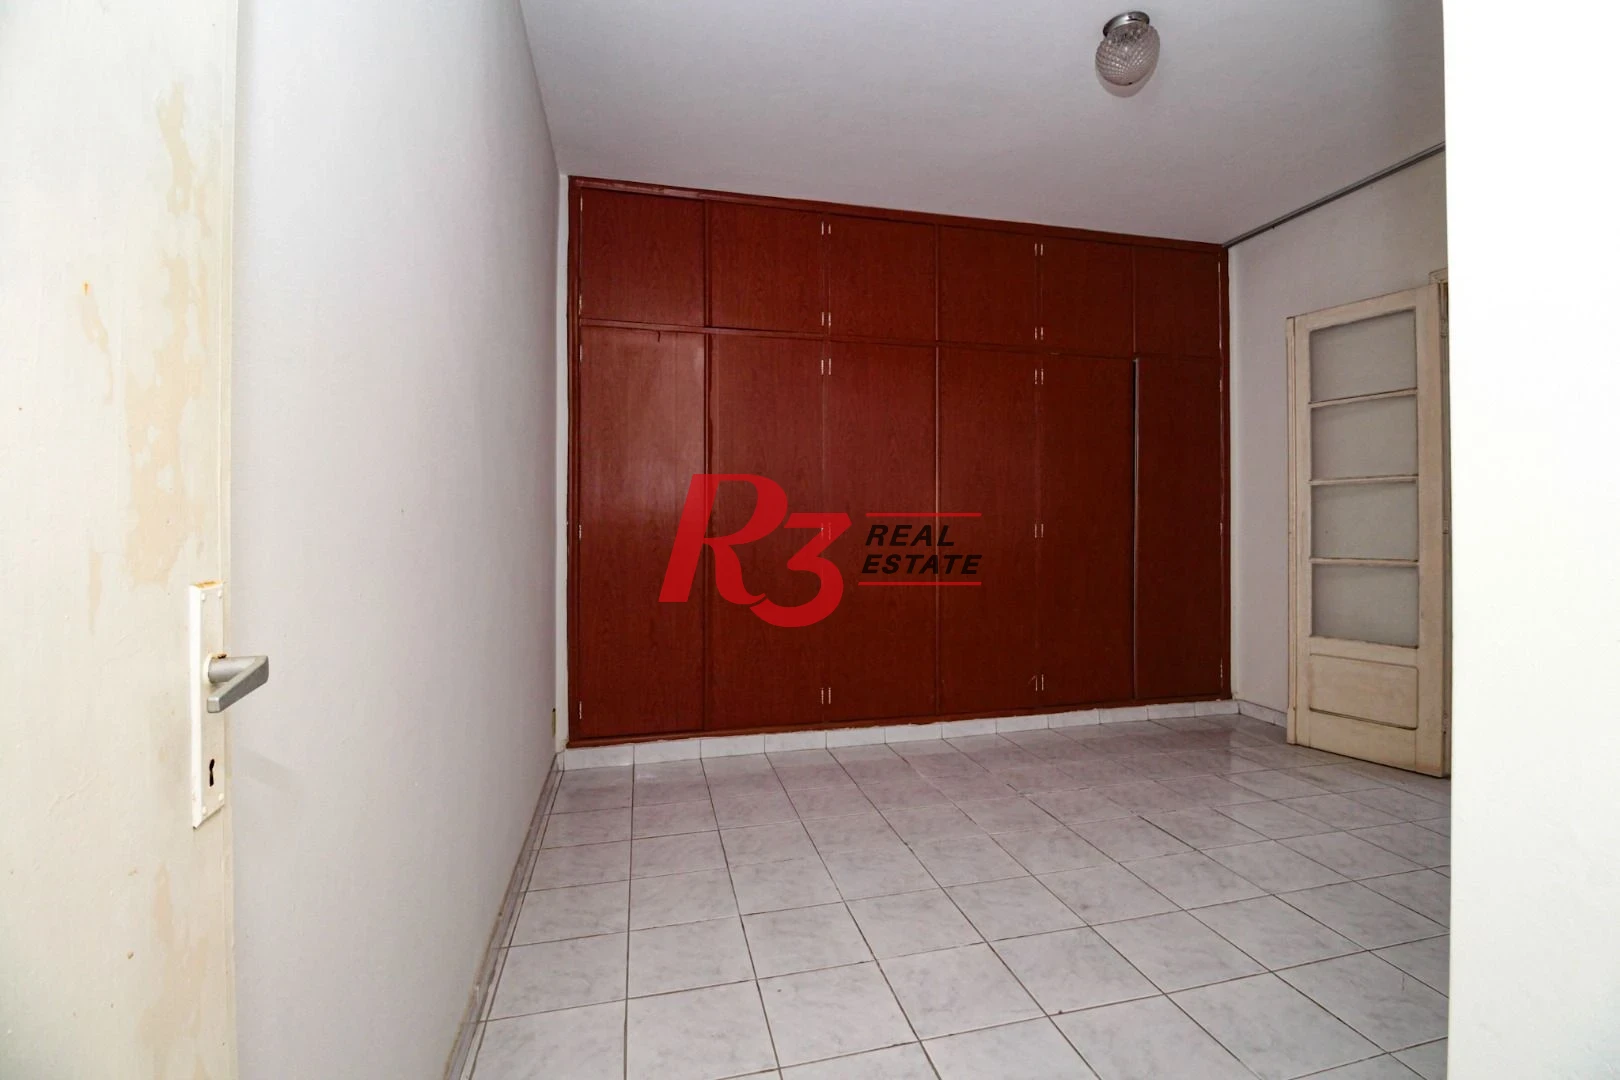 Apartamento a venda, 86 m², 2 dormitórios, 1 vaga, Encruzilhada, Santos SP